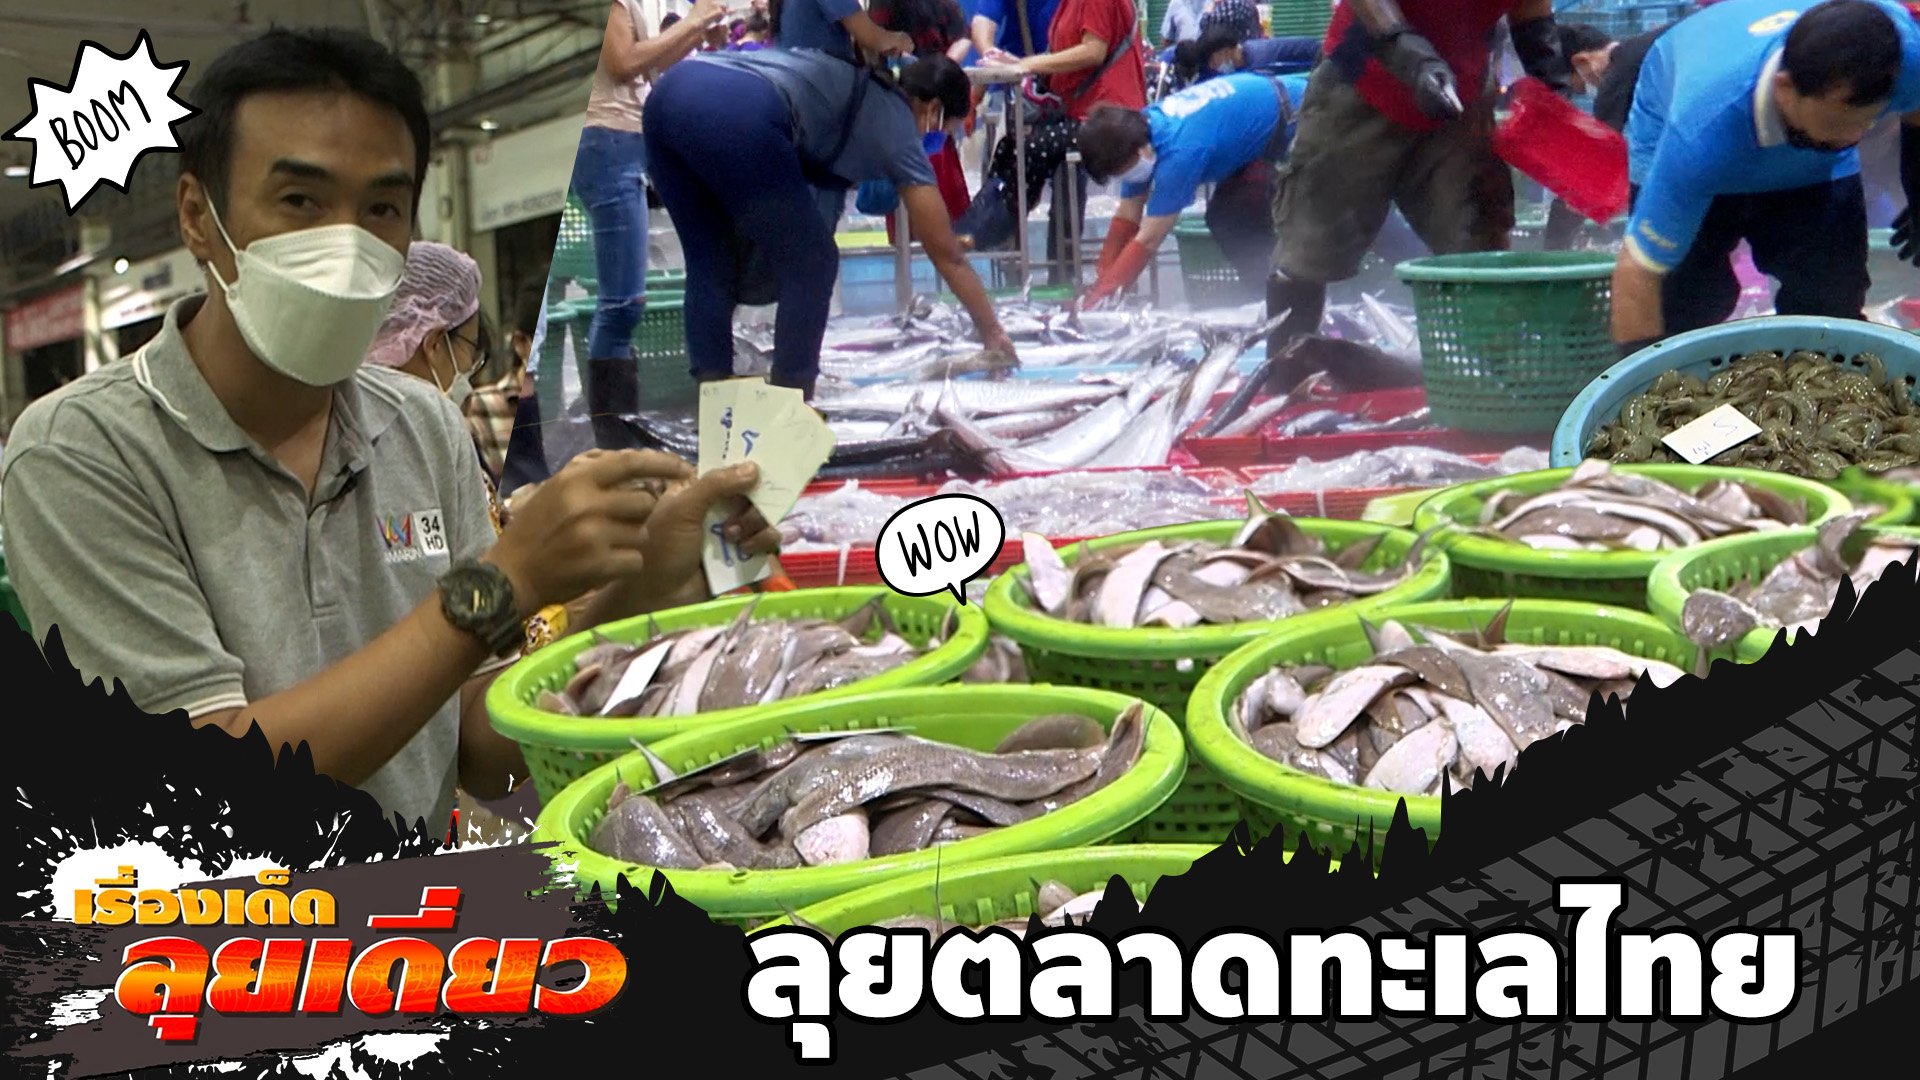 ลุยตลาดทะเลไทย ซื้อขายประมูลปลาใหญ่สุดในประเทศ | ข่าวเที่ยงอมรินทร์ | 4 ต.ค. 65 | AMARIN TVHD34